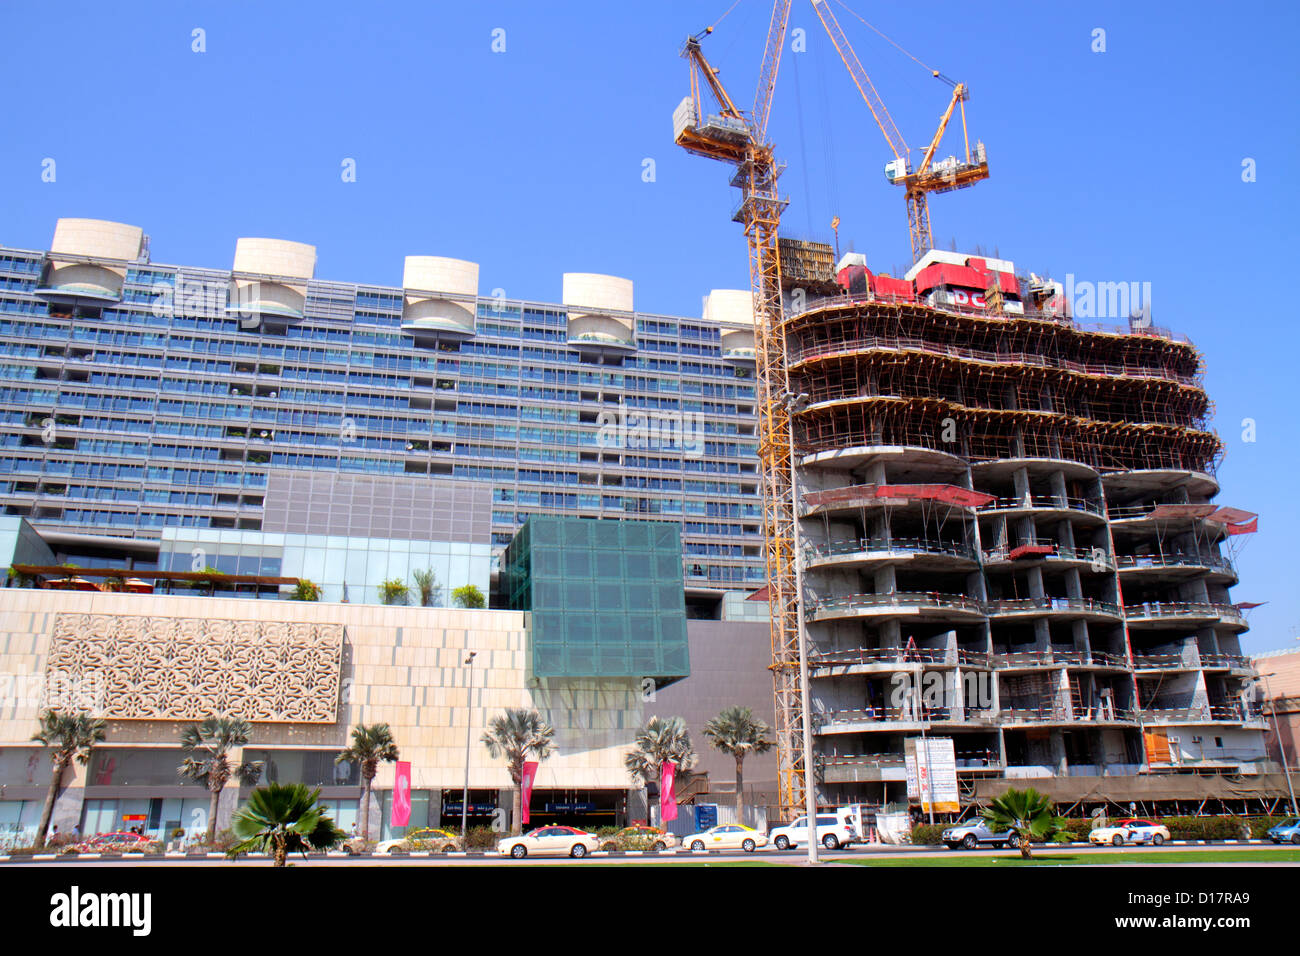 Dubai UAE,Emirati Arabi Uniti,Sheikh Khalifa bin Zayed Road,edificio,sotto costruzione nuovo cantiere costruttore,gru,strada scena,autobus,pullman,Burjum Foto Stock